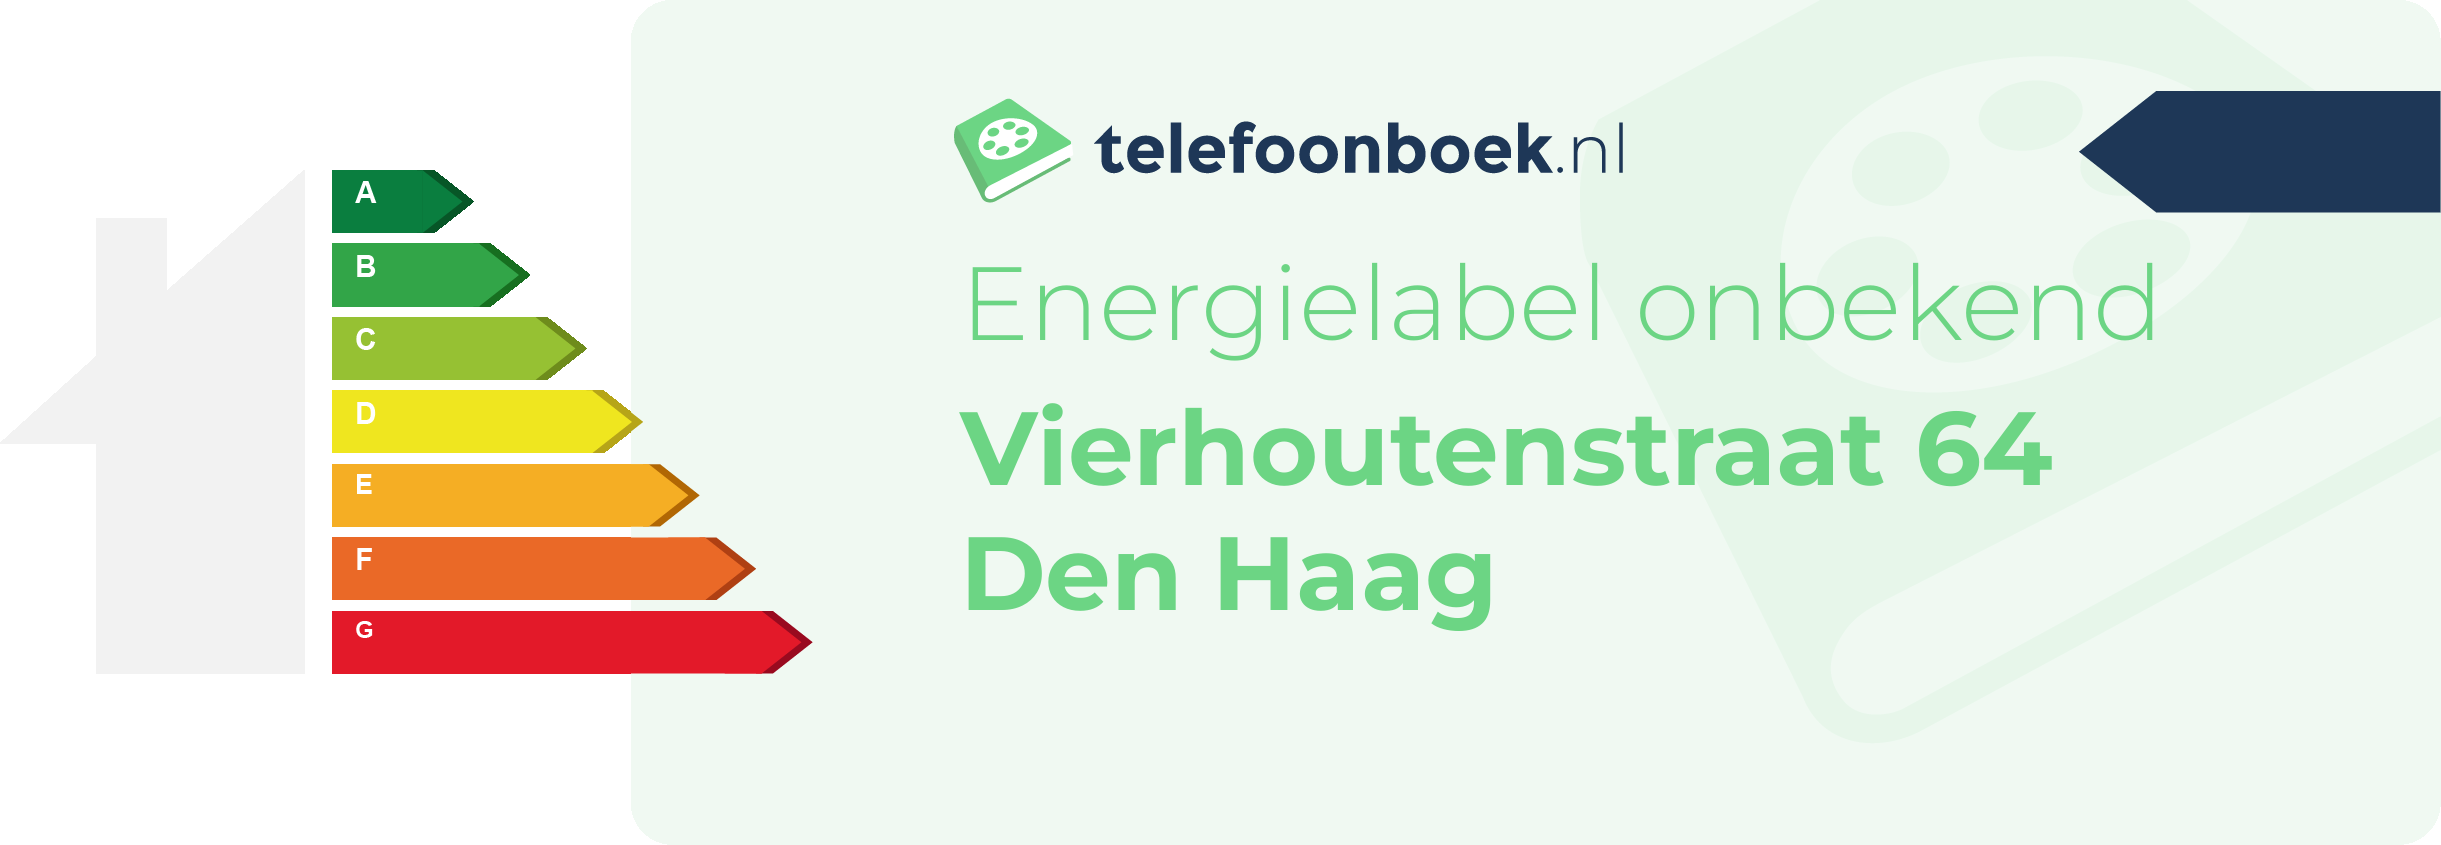 Energielabel Vierhoutenstraat 64 Den Haag